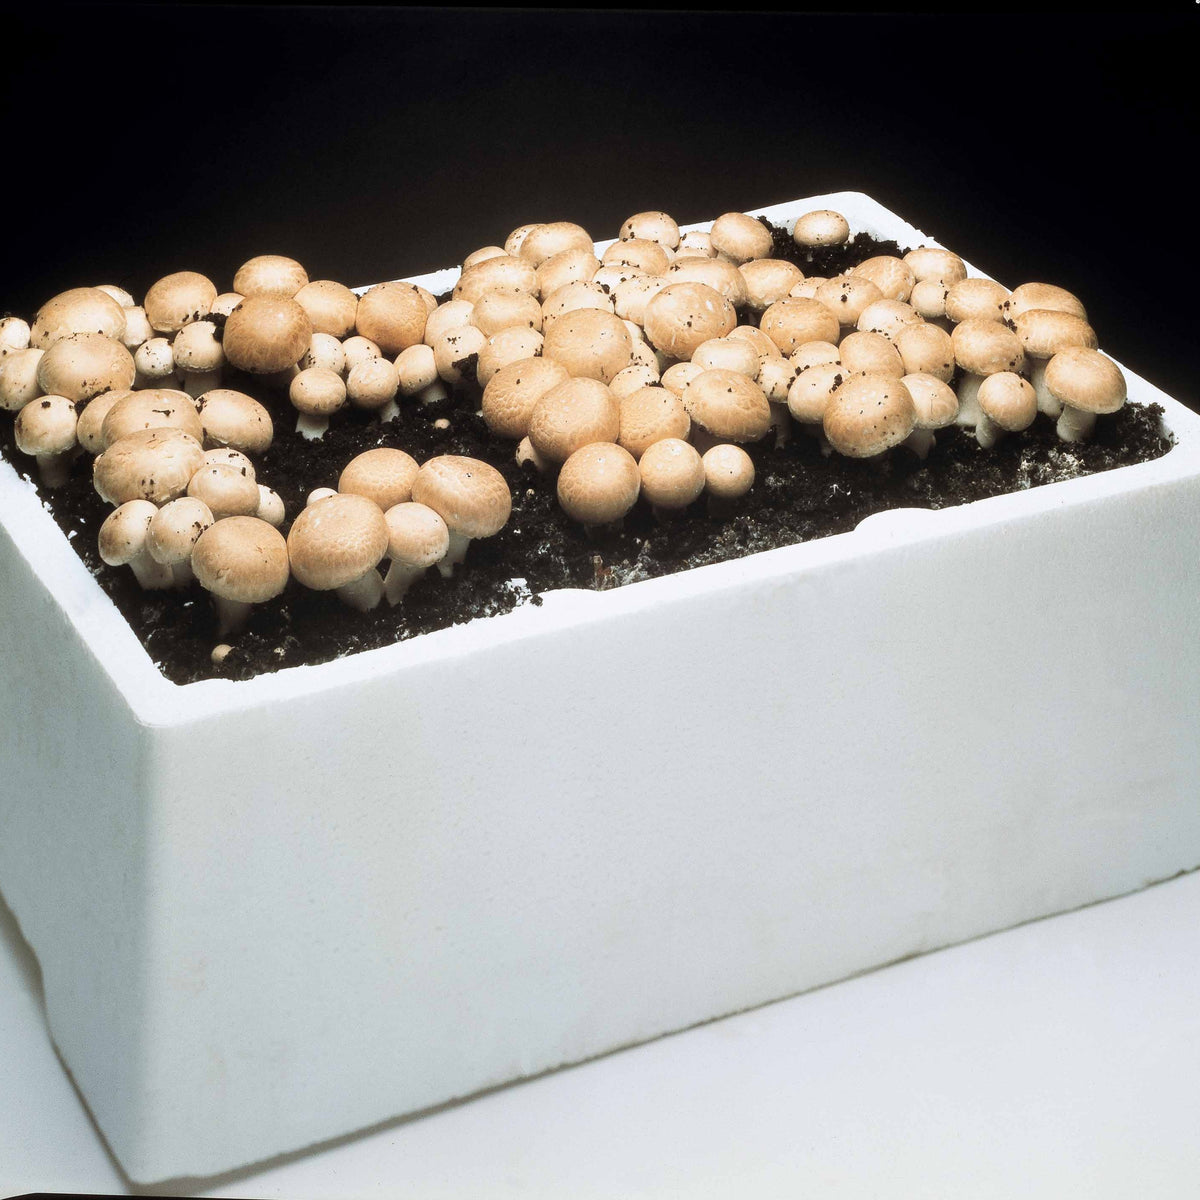 Kit champignons de Paris bruns